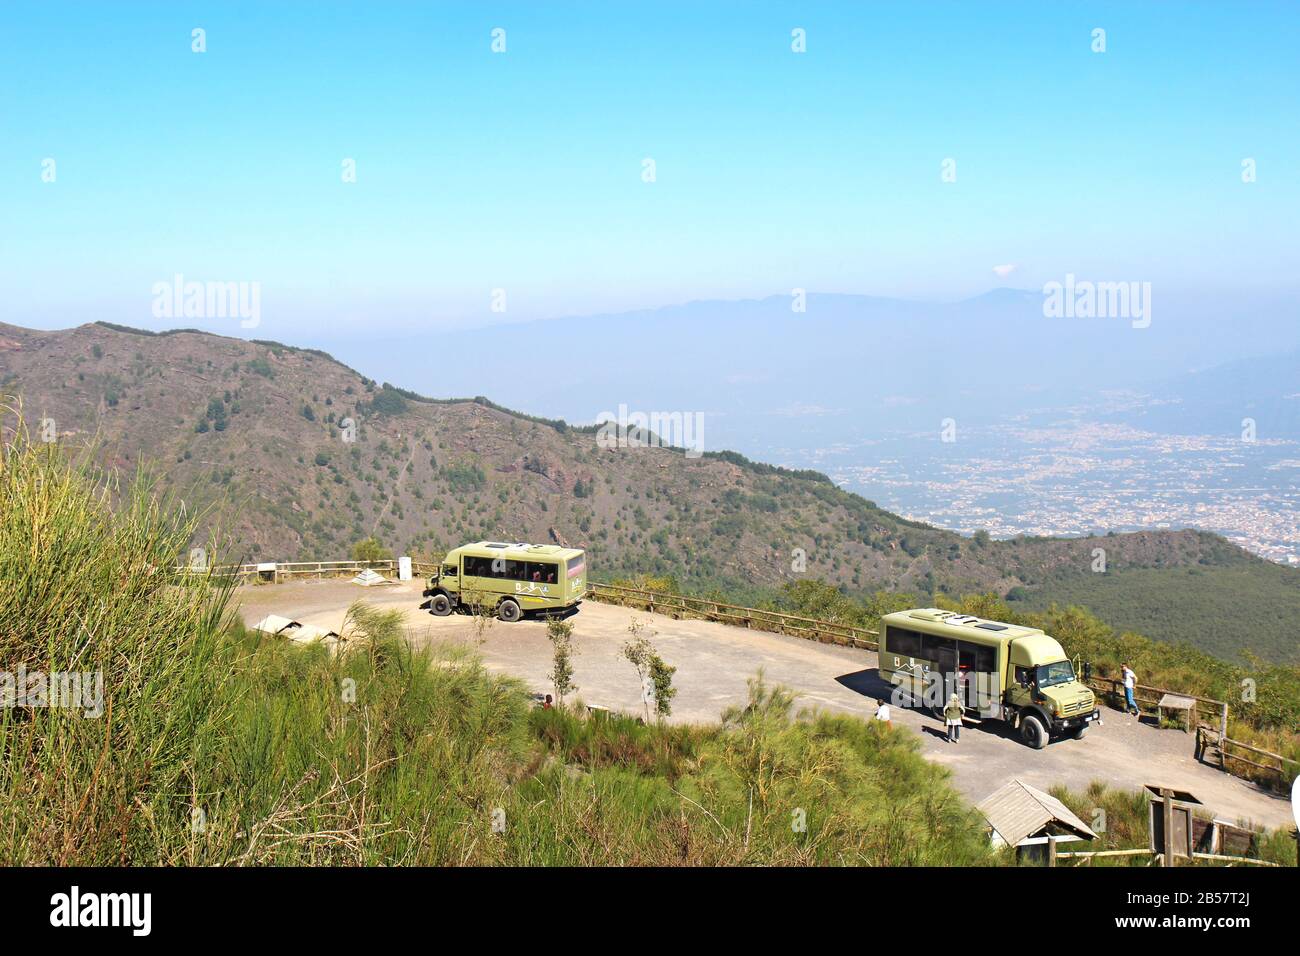 Busse der Busvia del Vesuvio Touren, die am Fuß des Wanderwegs geparkt sind, um zum Gipfel des Schlackenkegels des Vulkans zu wandern. Stockfoto